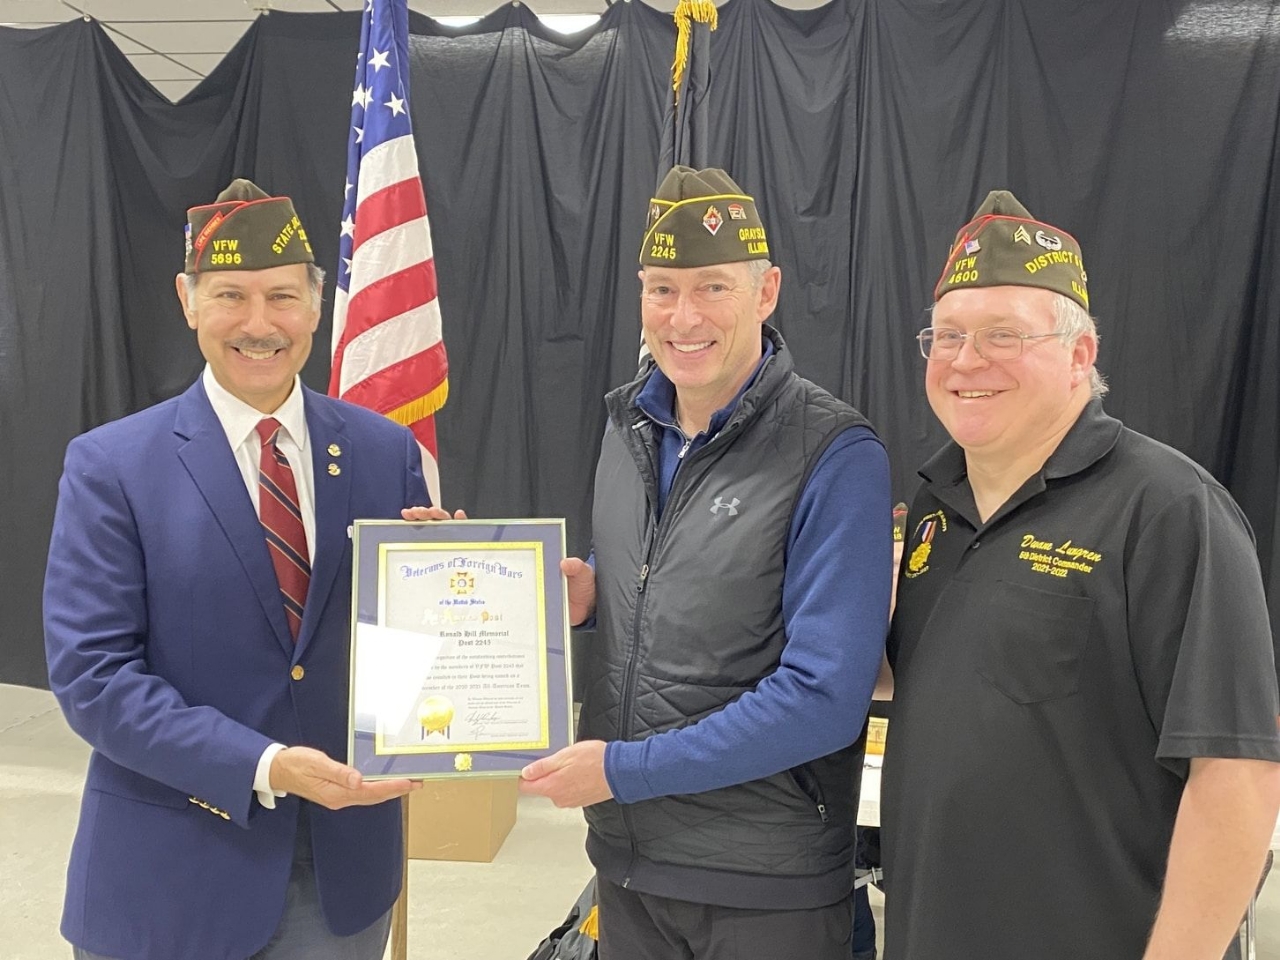 Commander Magnetta presented All American Certificate by VFW Illinois Jr Vice, Brett Nilla